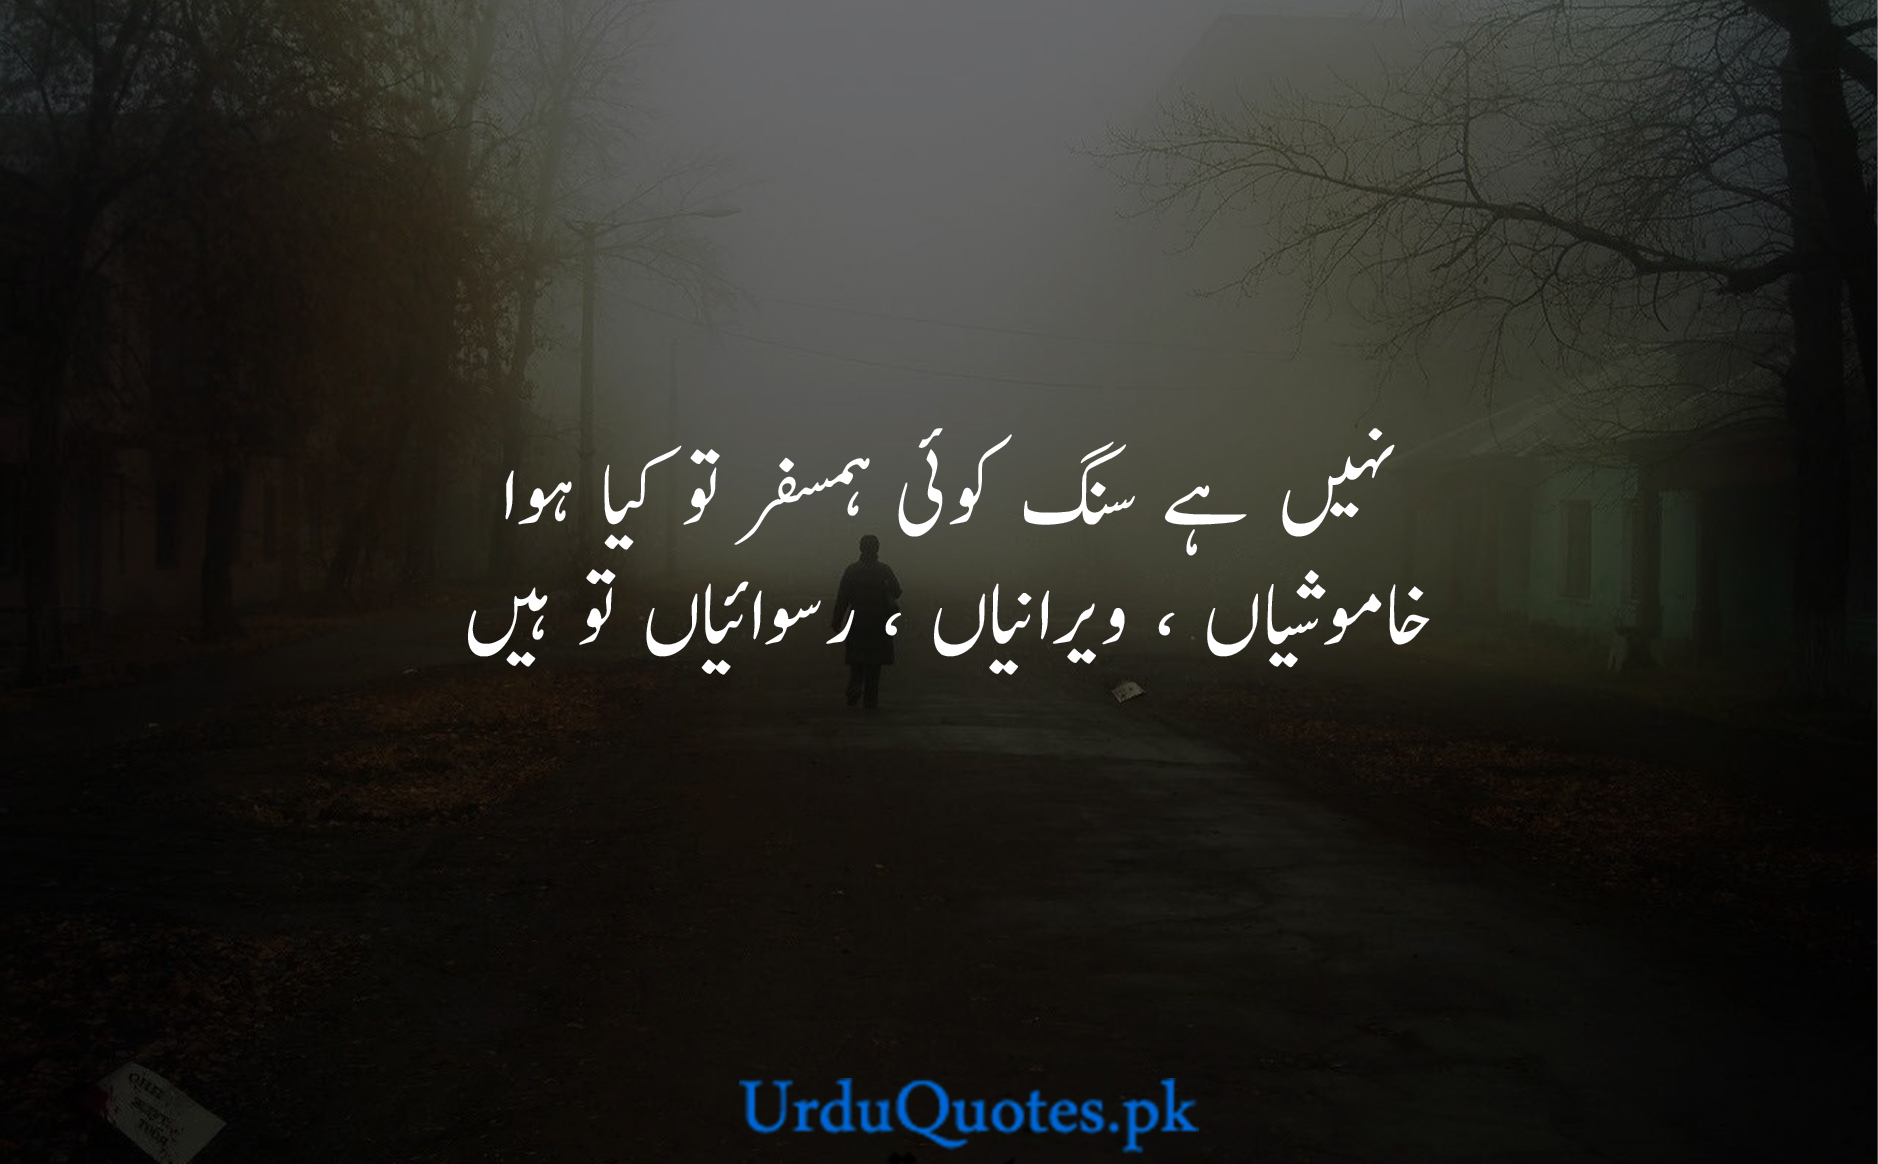 Sad-poetry-in-urdu-7-2